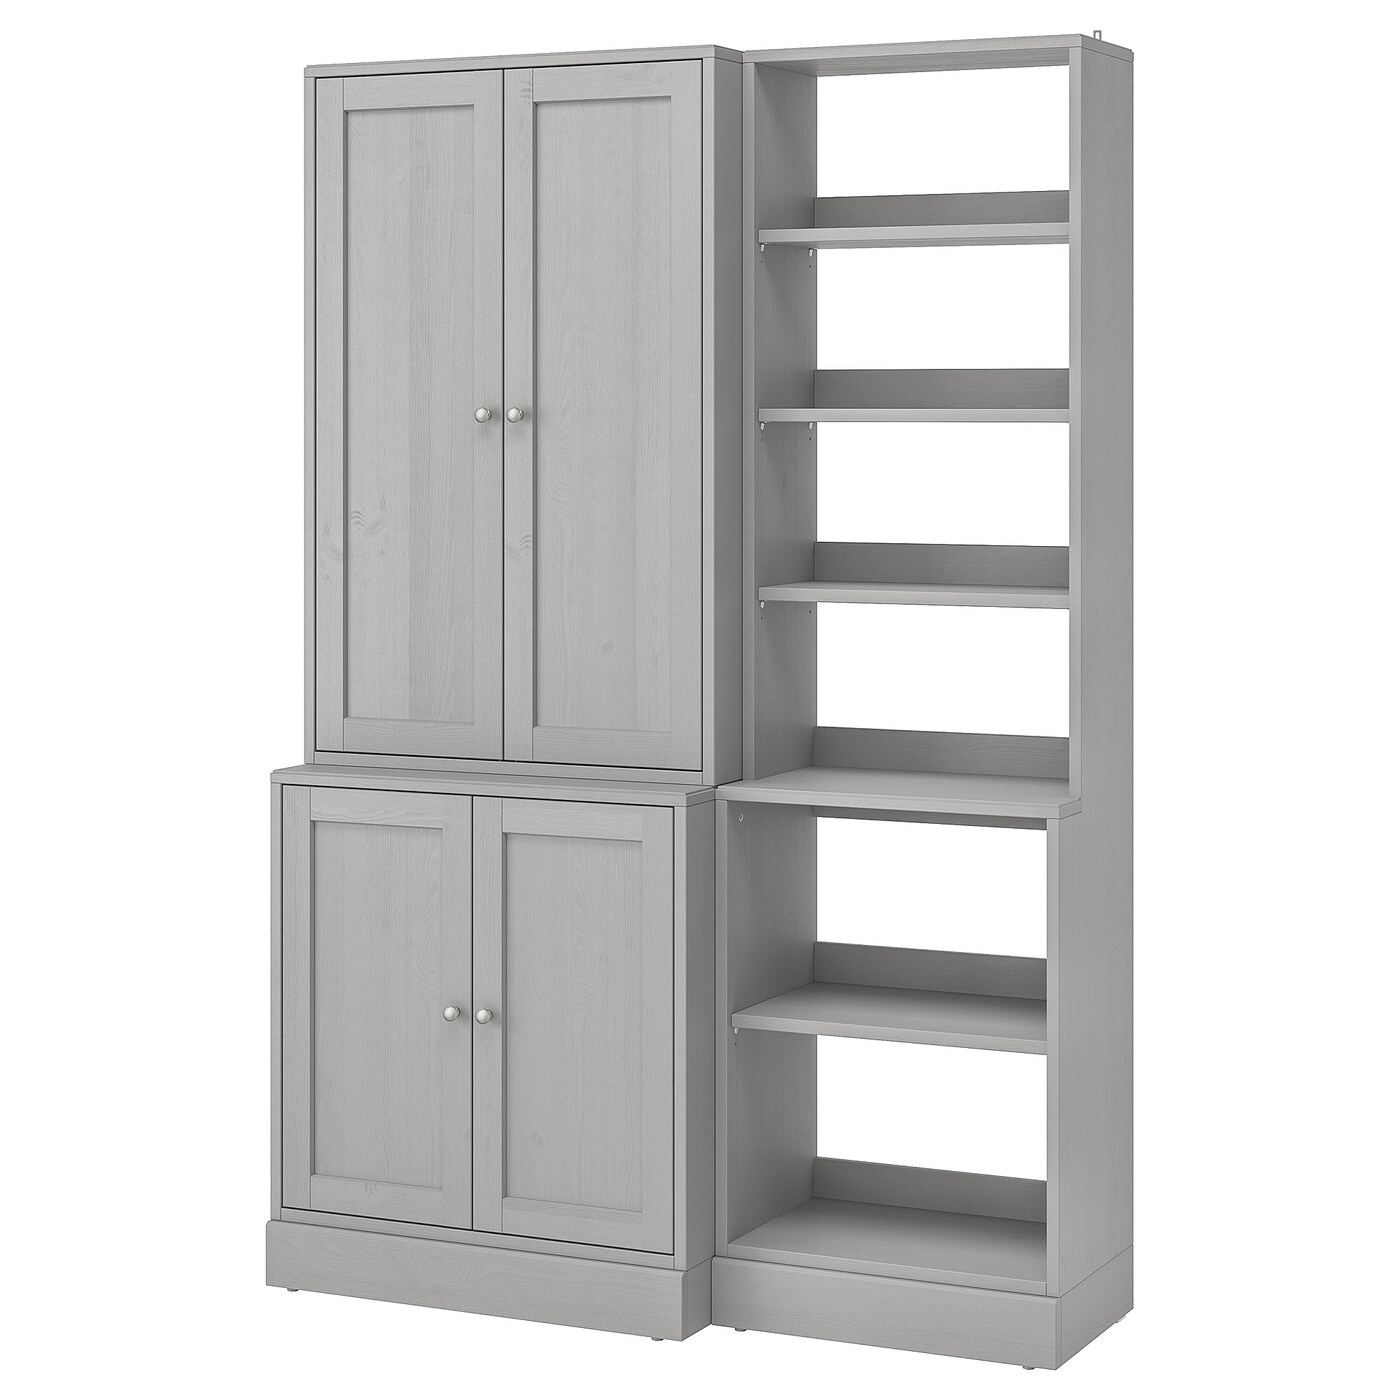 Книжный шкаф - HAVSTA IKEA/ ХАВСТА ИКЕА,  212х142 см, серый